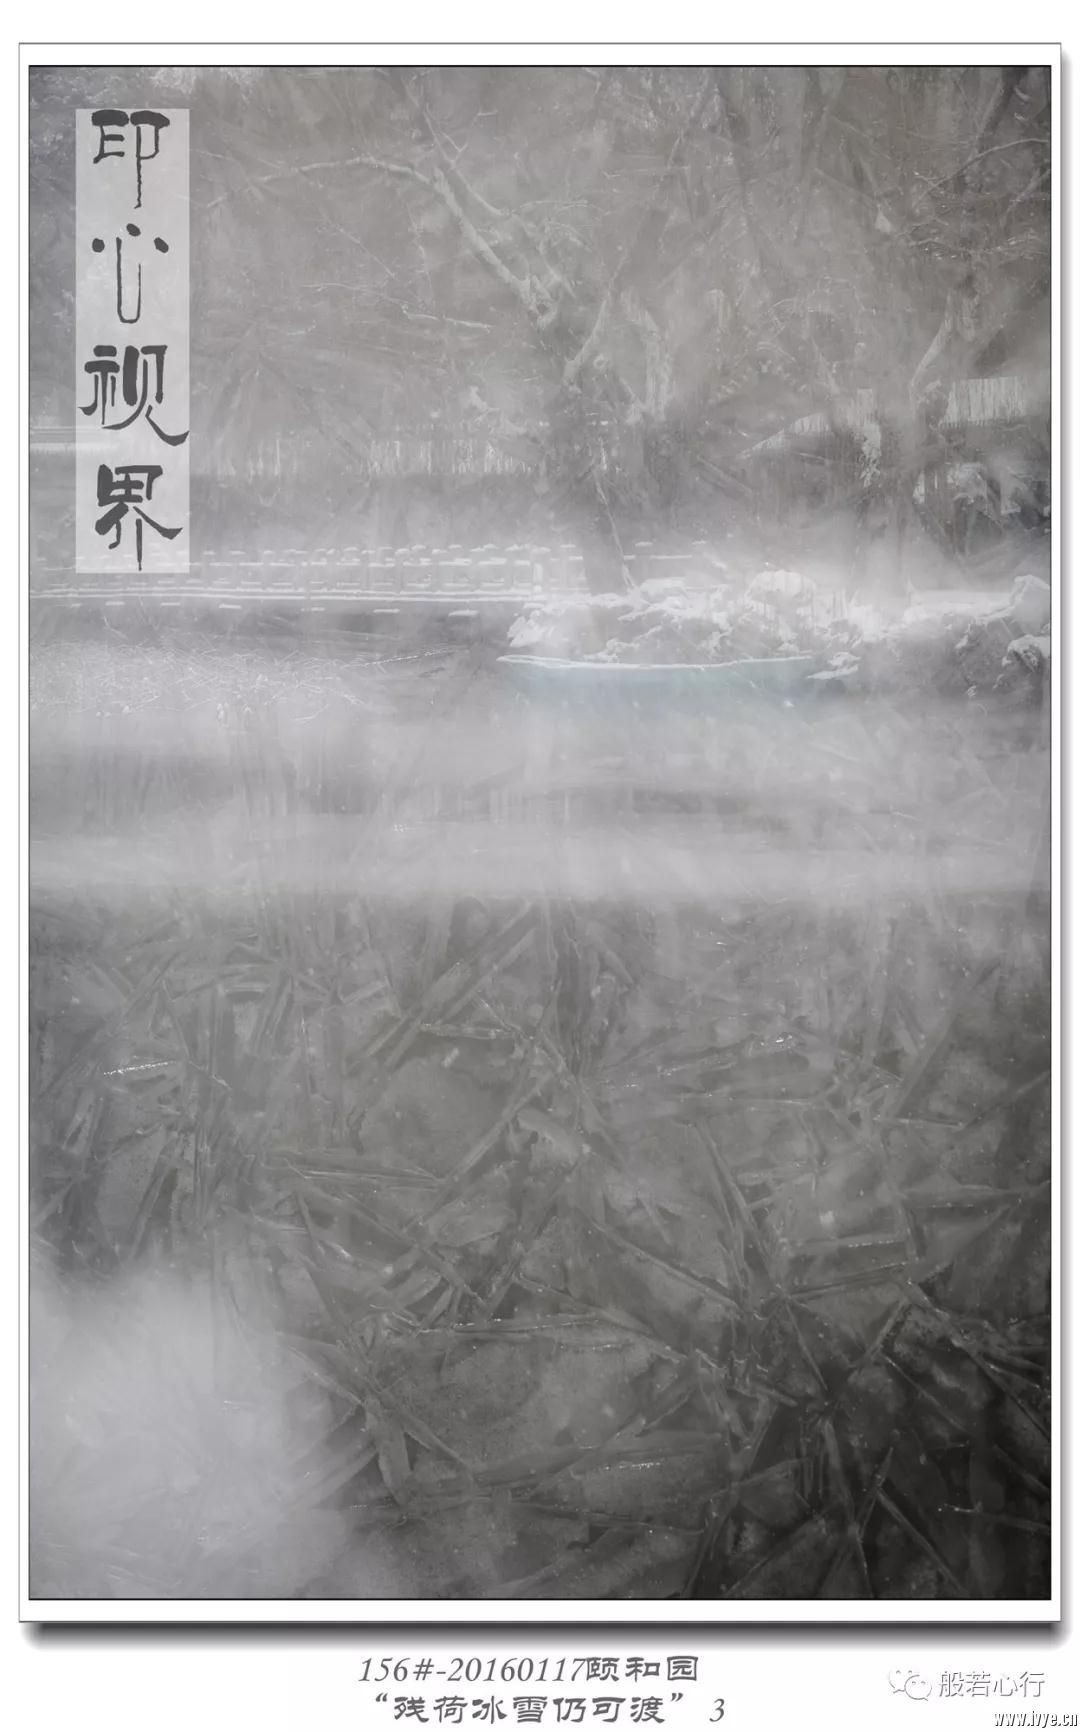 156#-20160117颐和园-“残荷冰雪仍可渡”3.jpg